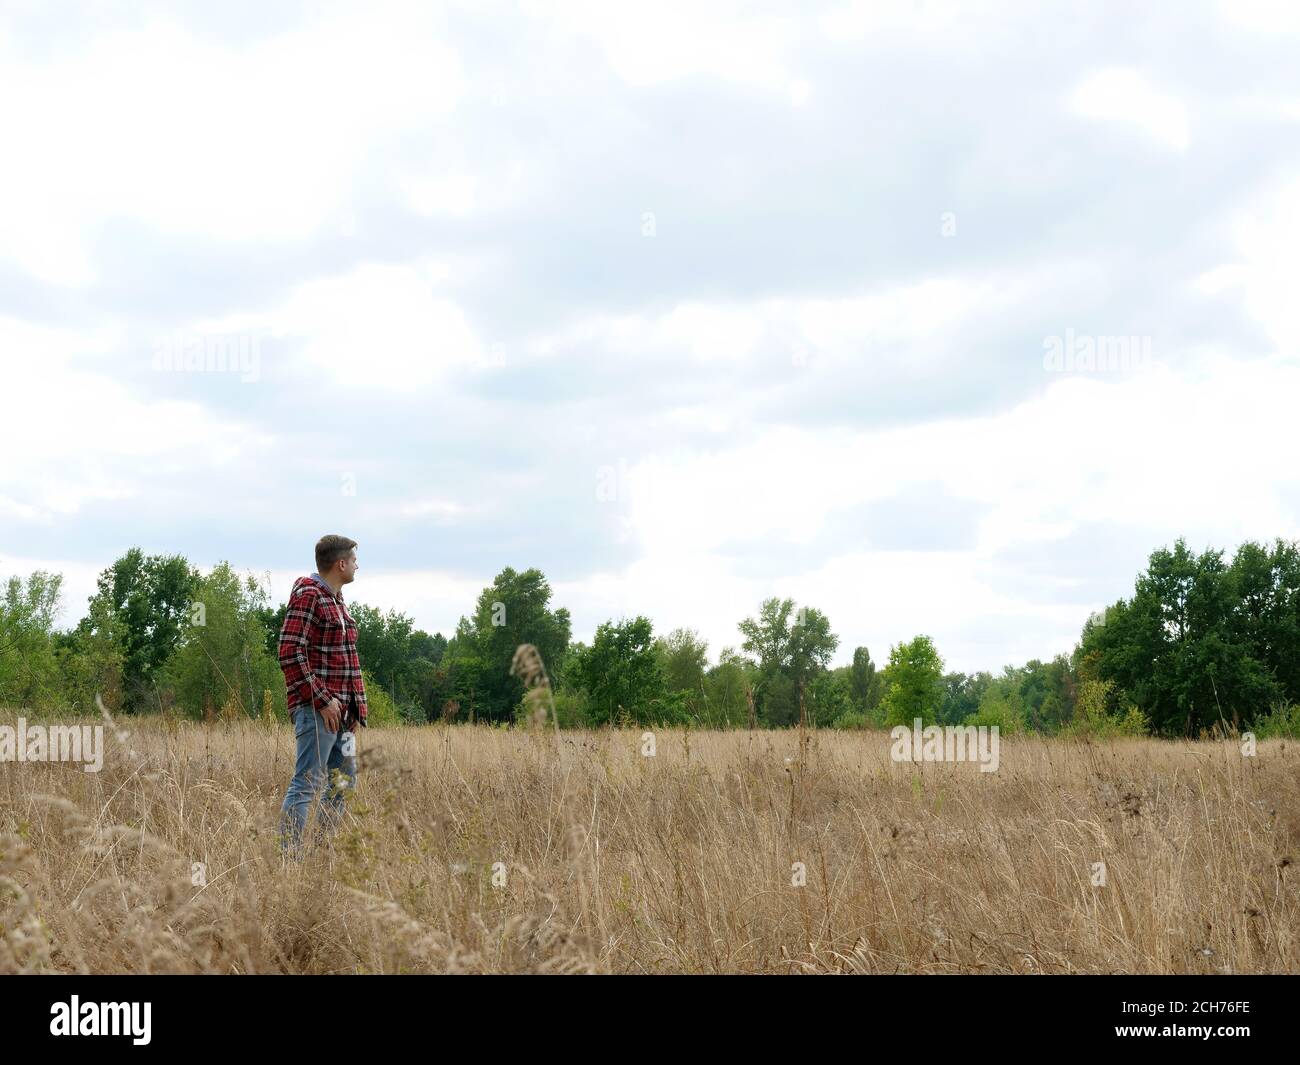 Un homme est seul dans un champ d'automne. Solitude et voyage. Banque D'Images